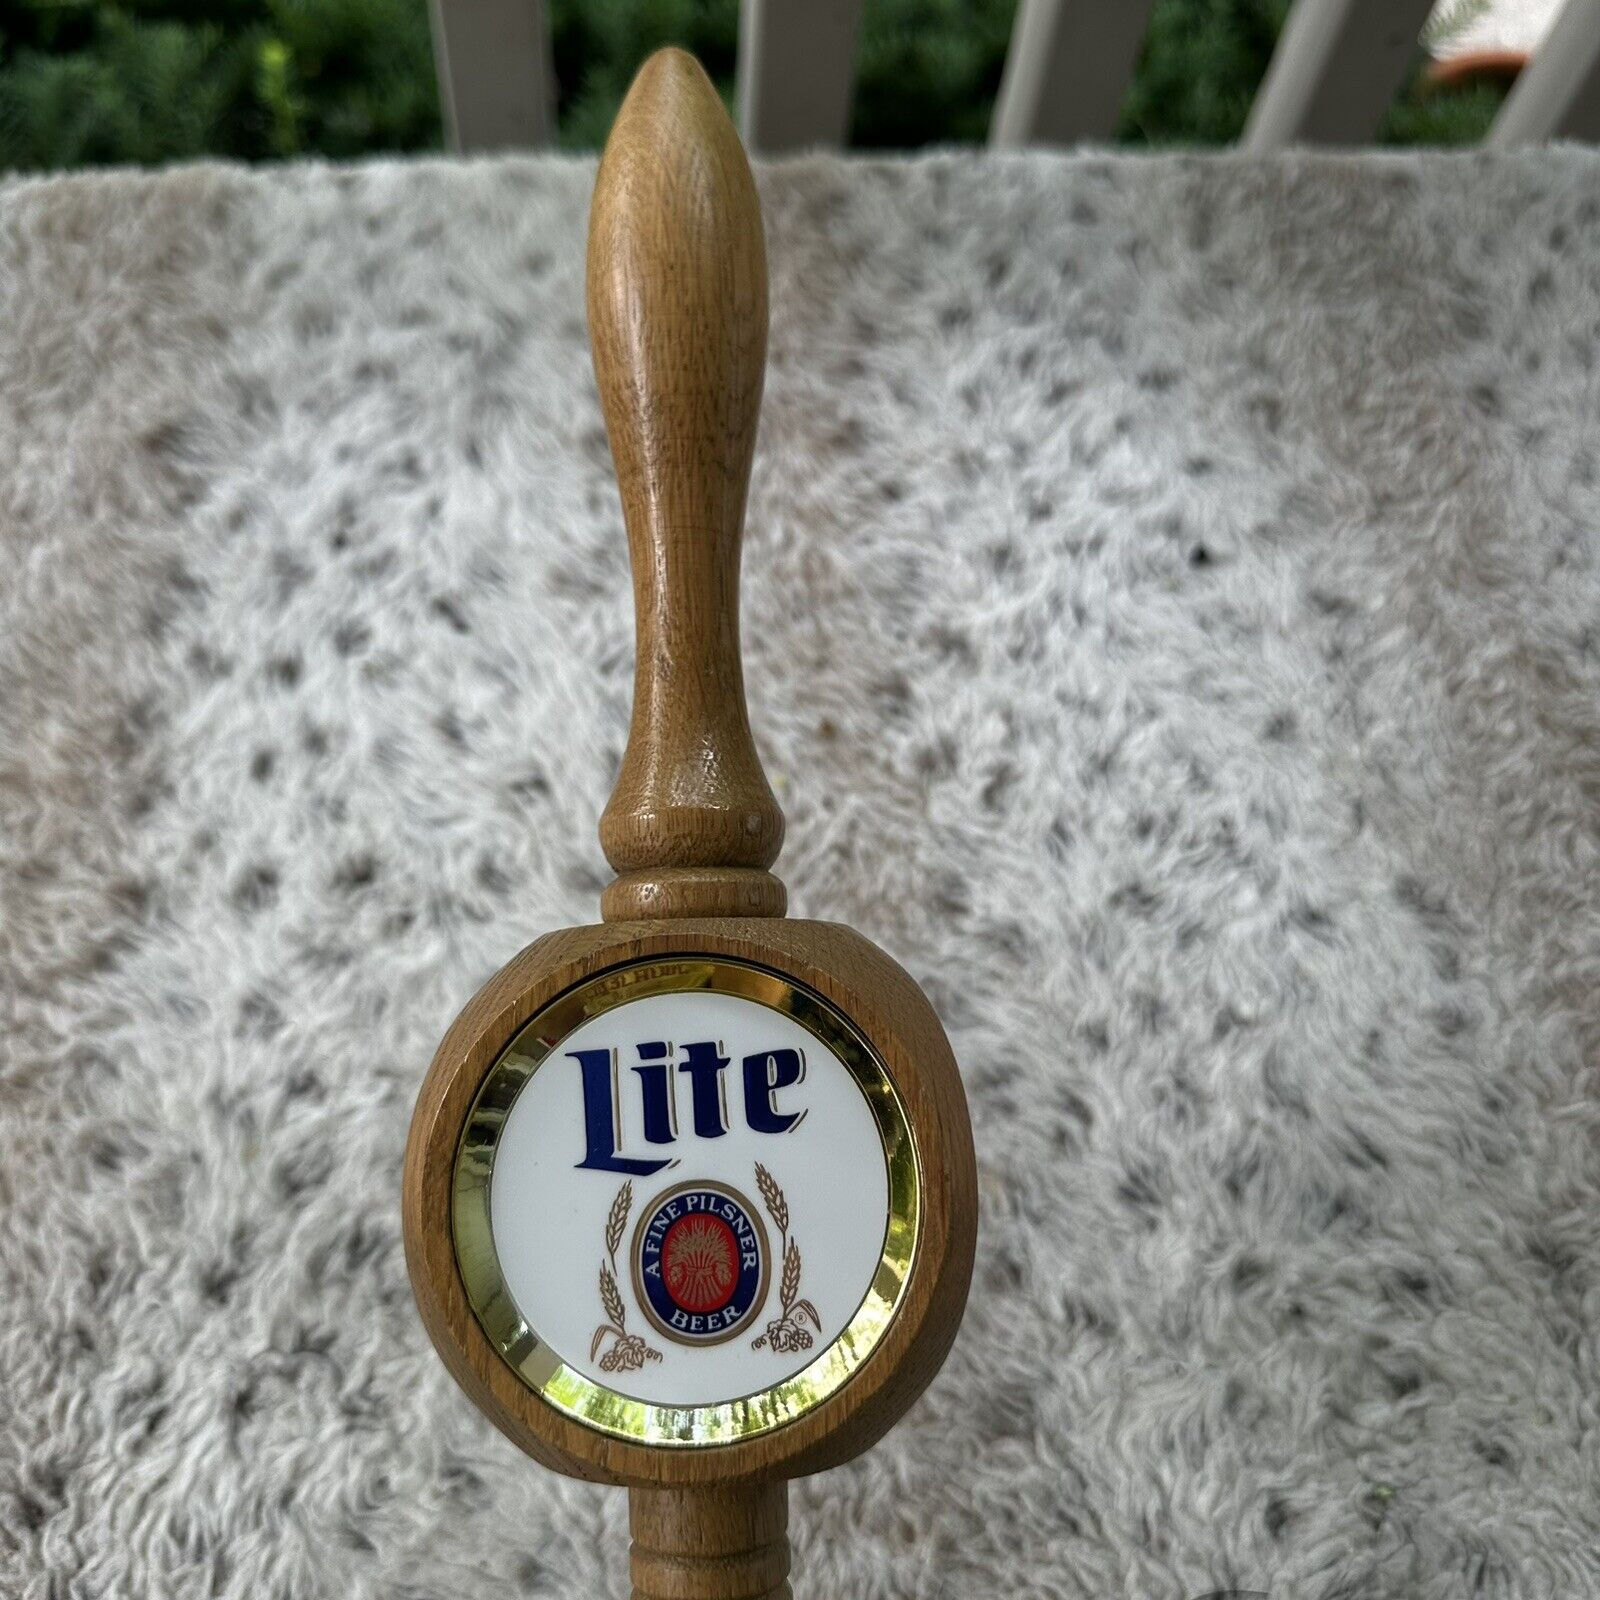 Vintage 11.5in Miller Lite Beer Wooden Beer Tap Handle - 3 Sided